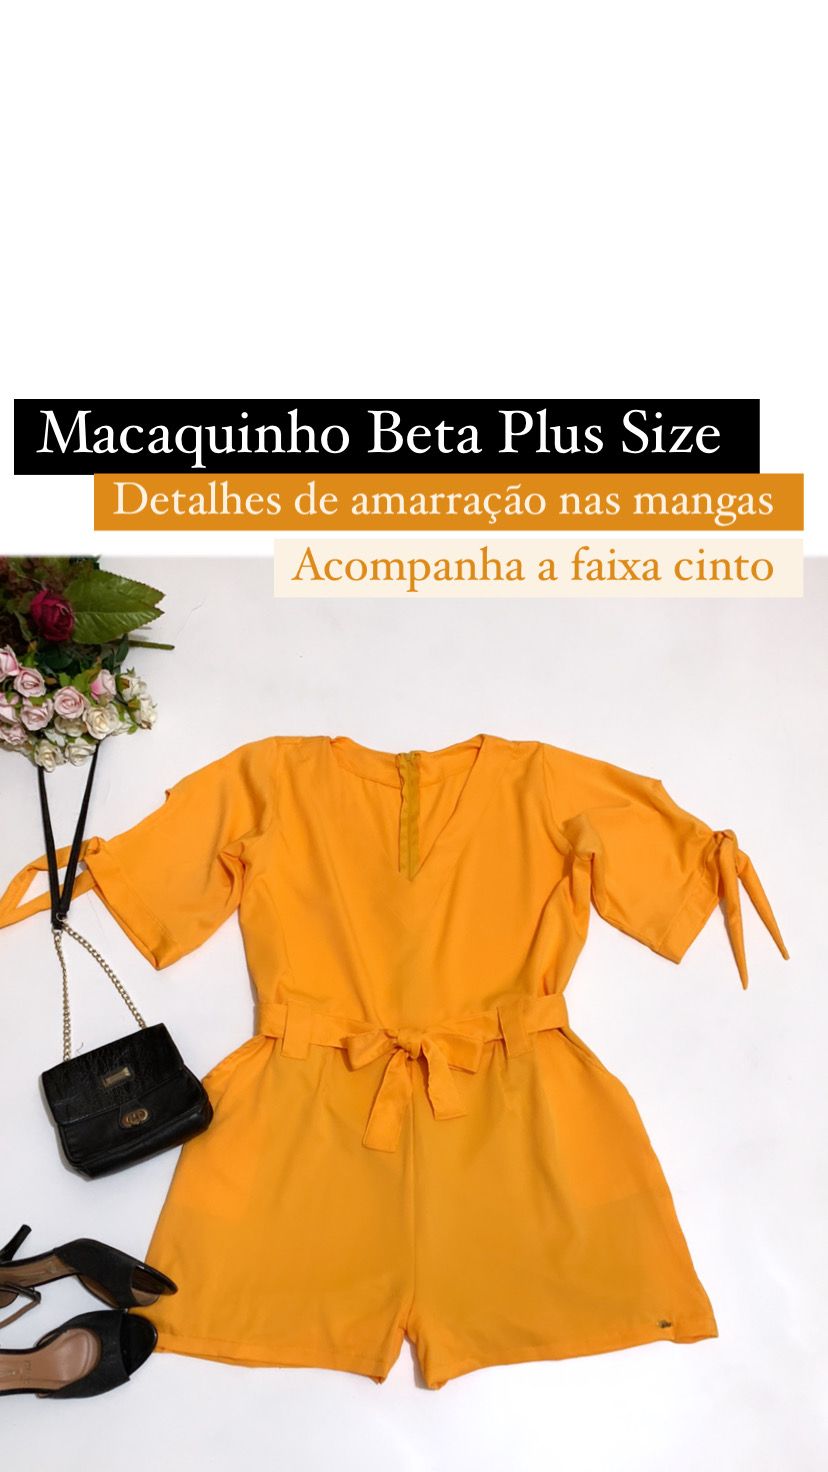 Macaquinho Beta Plus